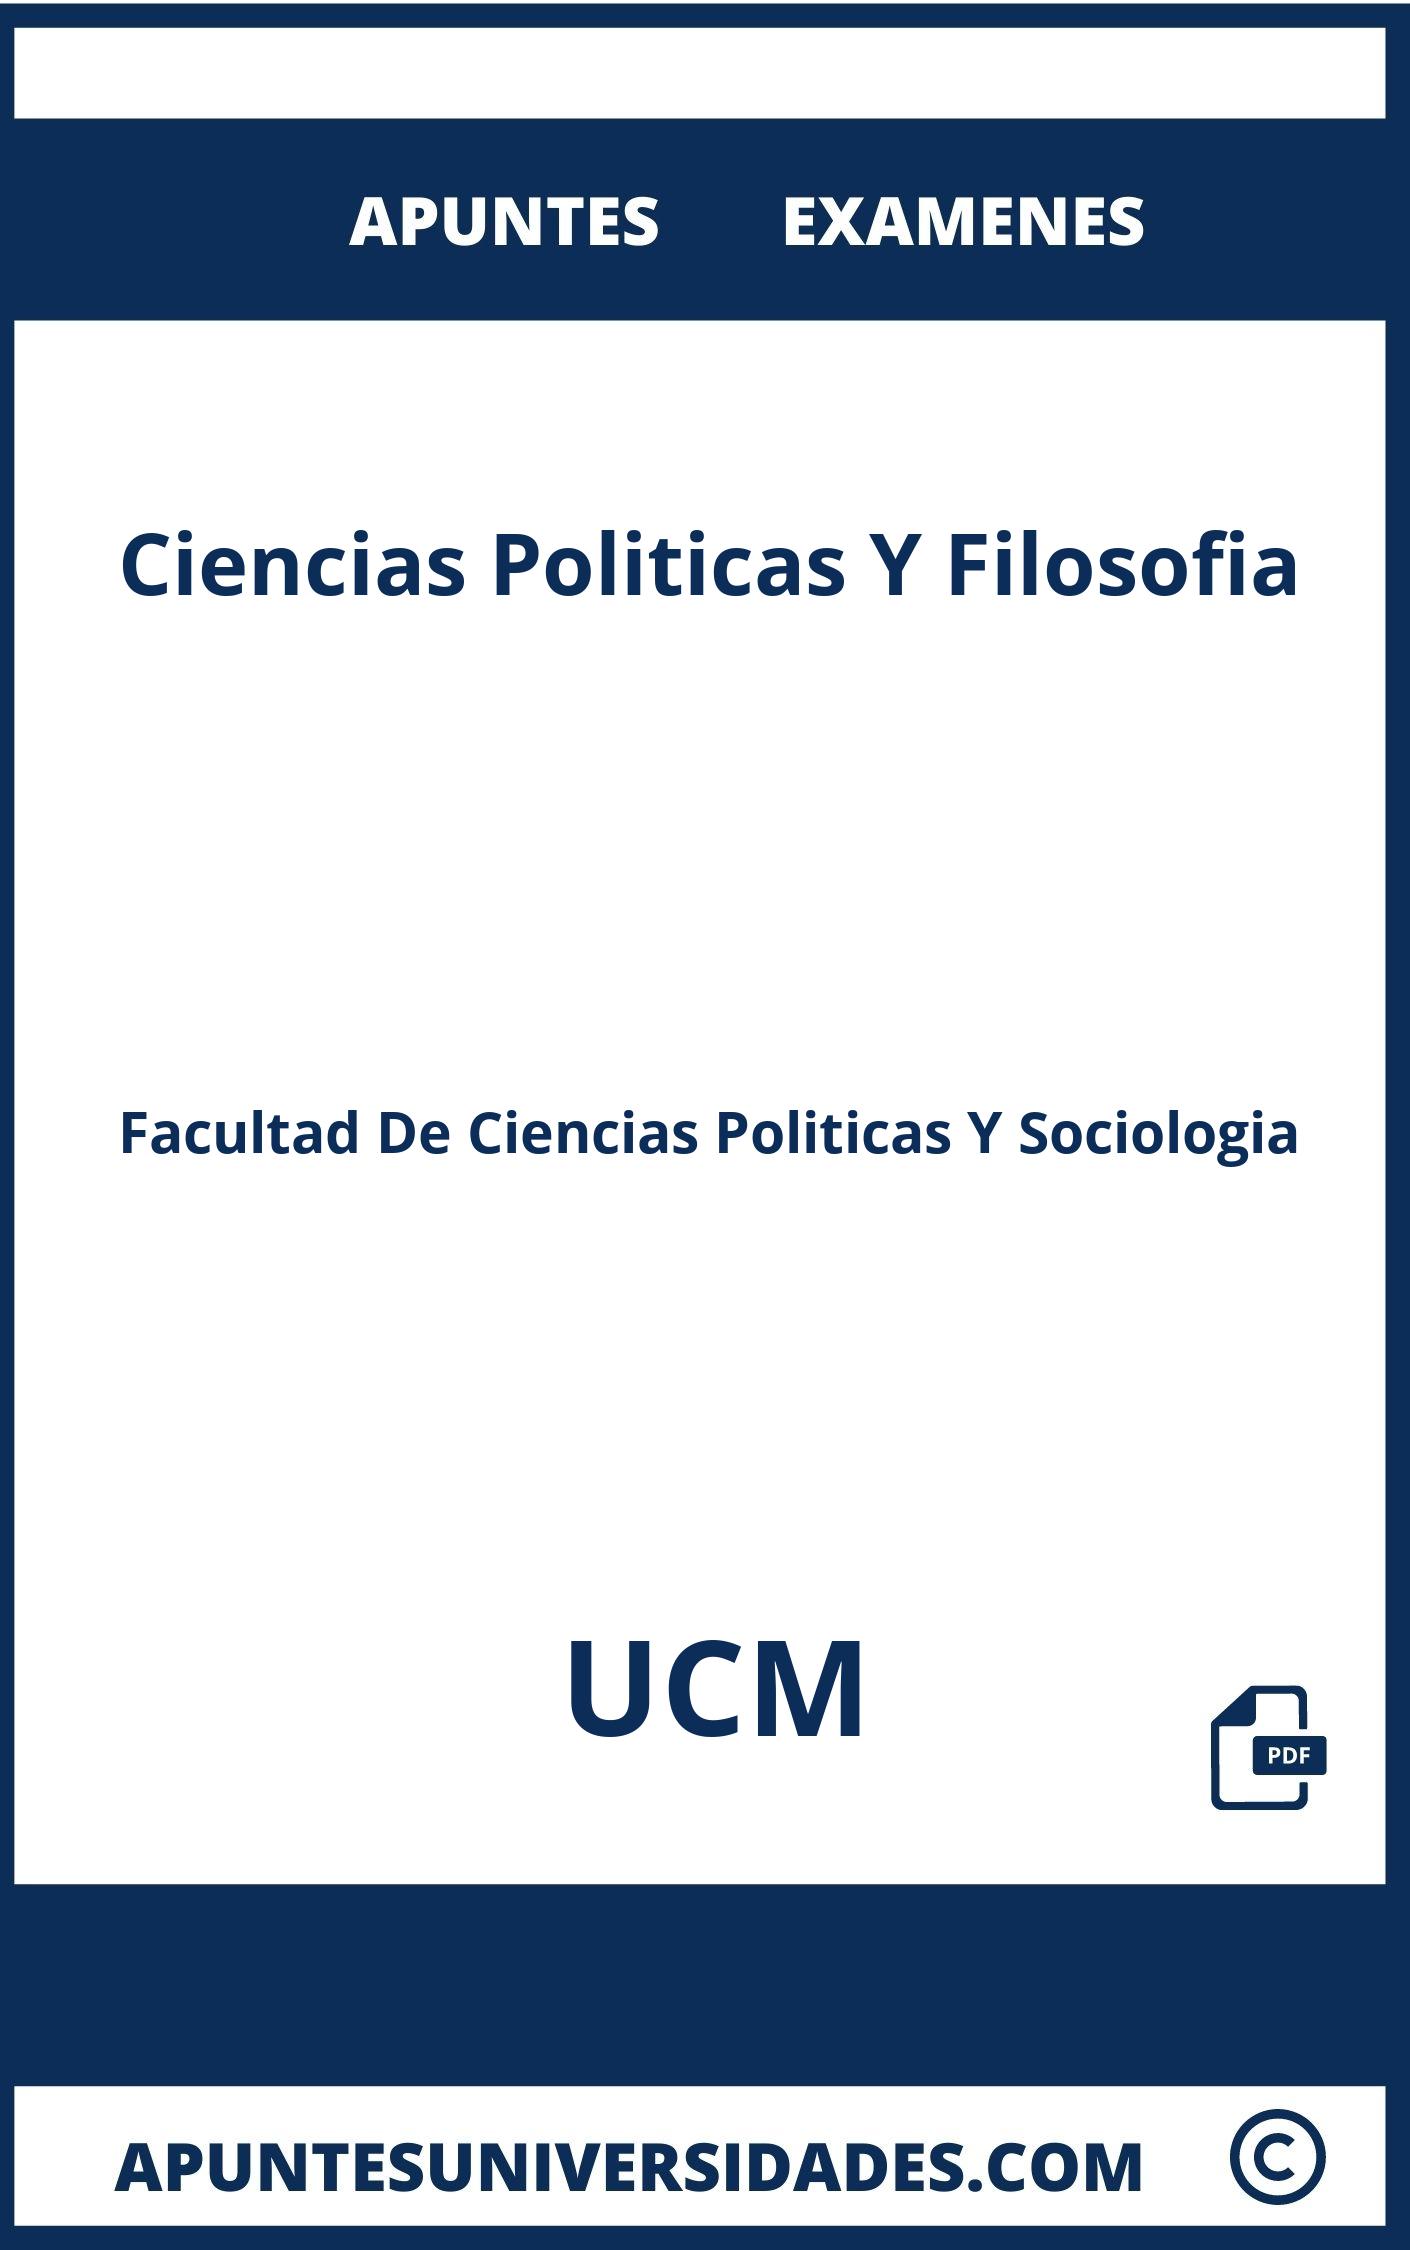 Examenes y Apuntes Ciencias Politicas Y Filosofia UCM